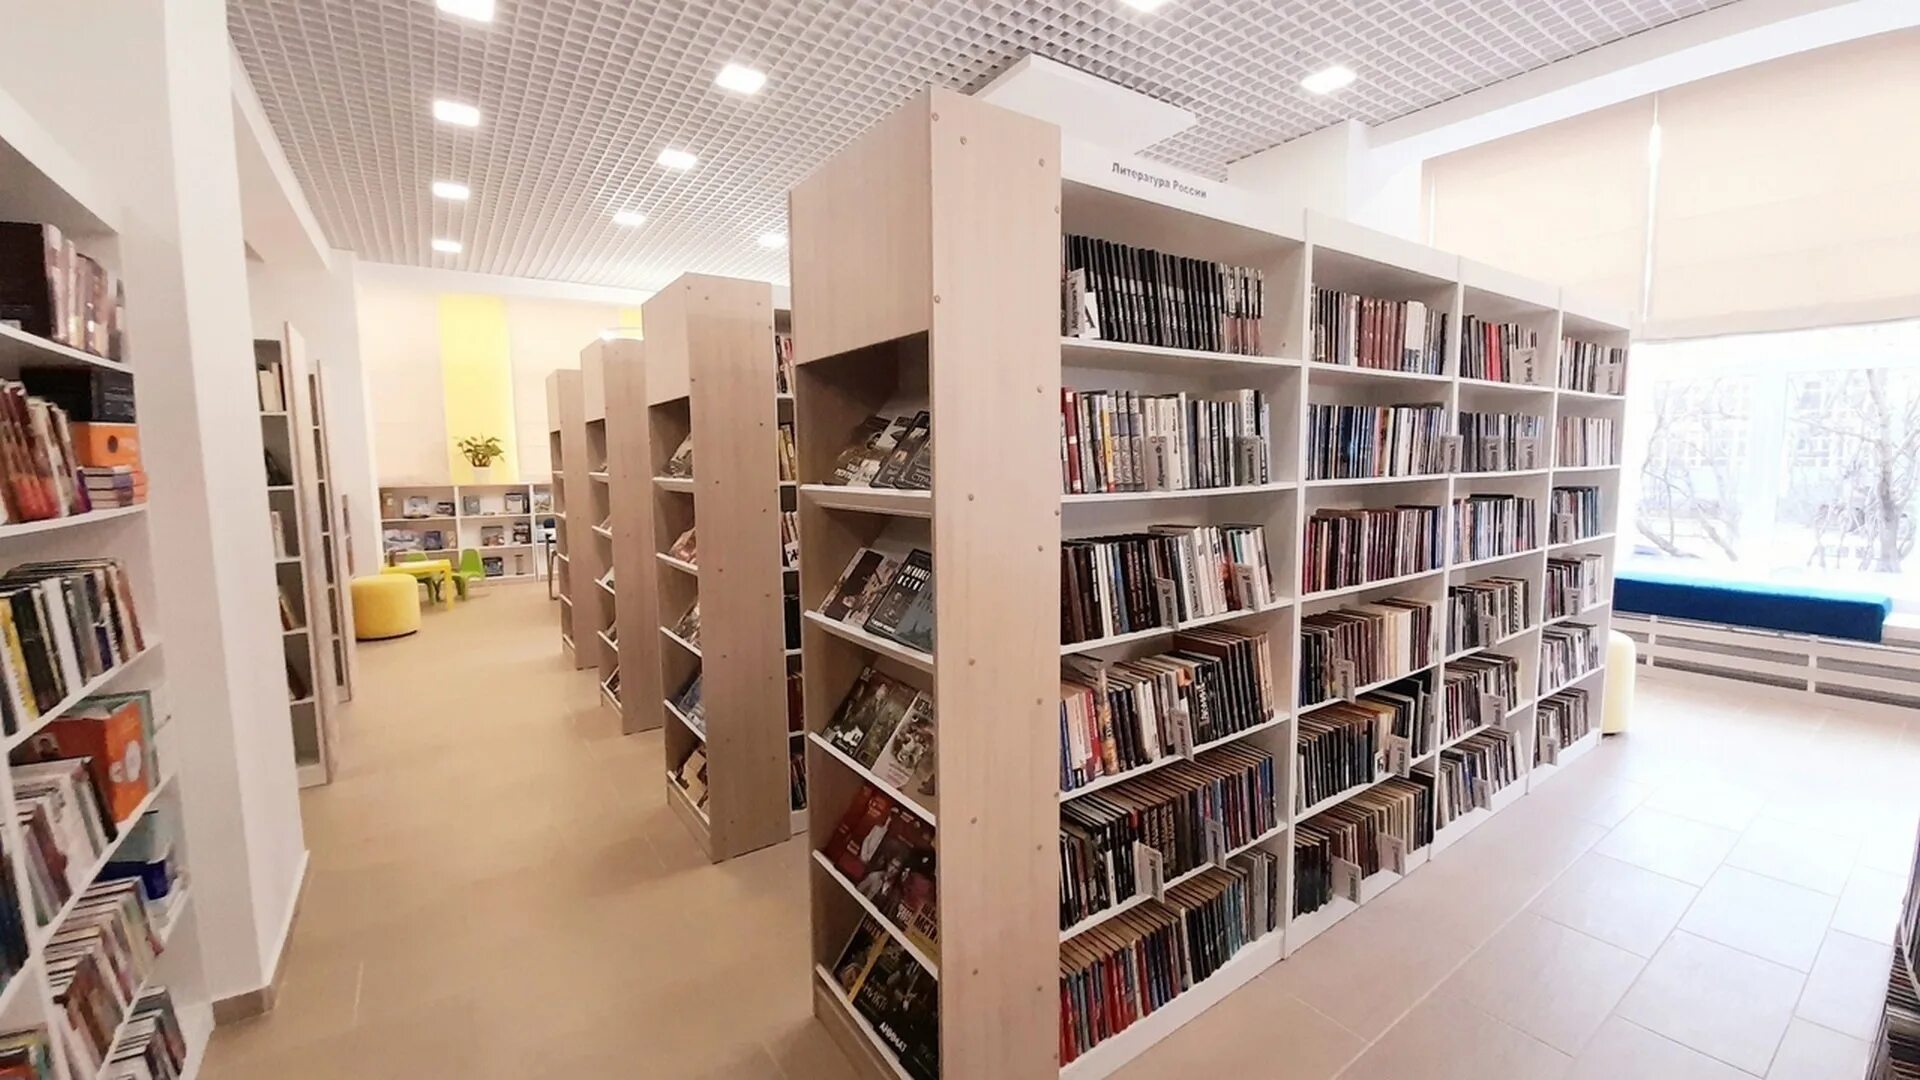 Библиотека Воркута. Центральная библиотека Воркута. Библиотека нового поколения. Модельная библиотека нового поколения.